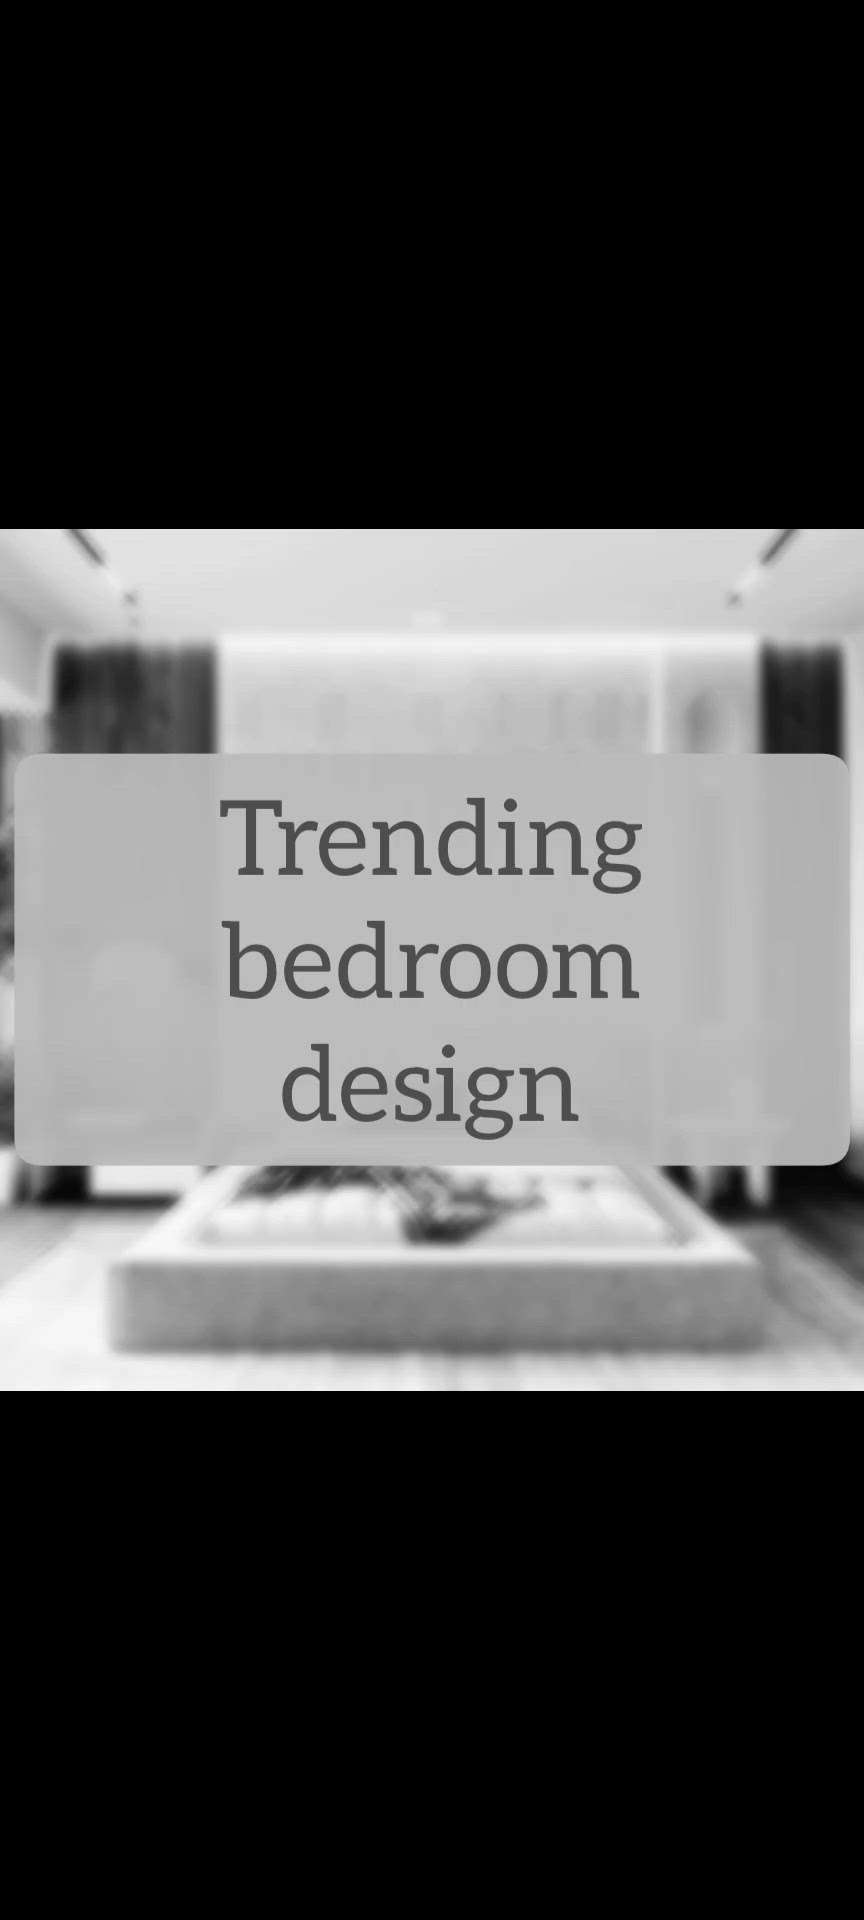 bedroom trends 2024!
#BedroomDesigns #bedroomtrend #BedroomIdeas #bedroomwallelevation #WallDesigns #bedroominteriors #MasterBedroom